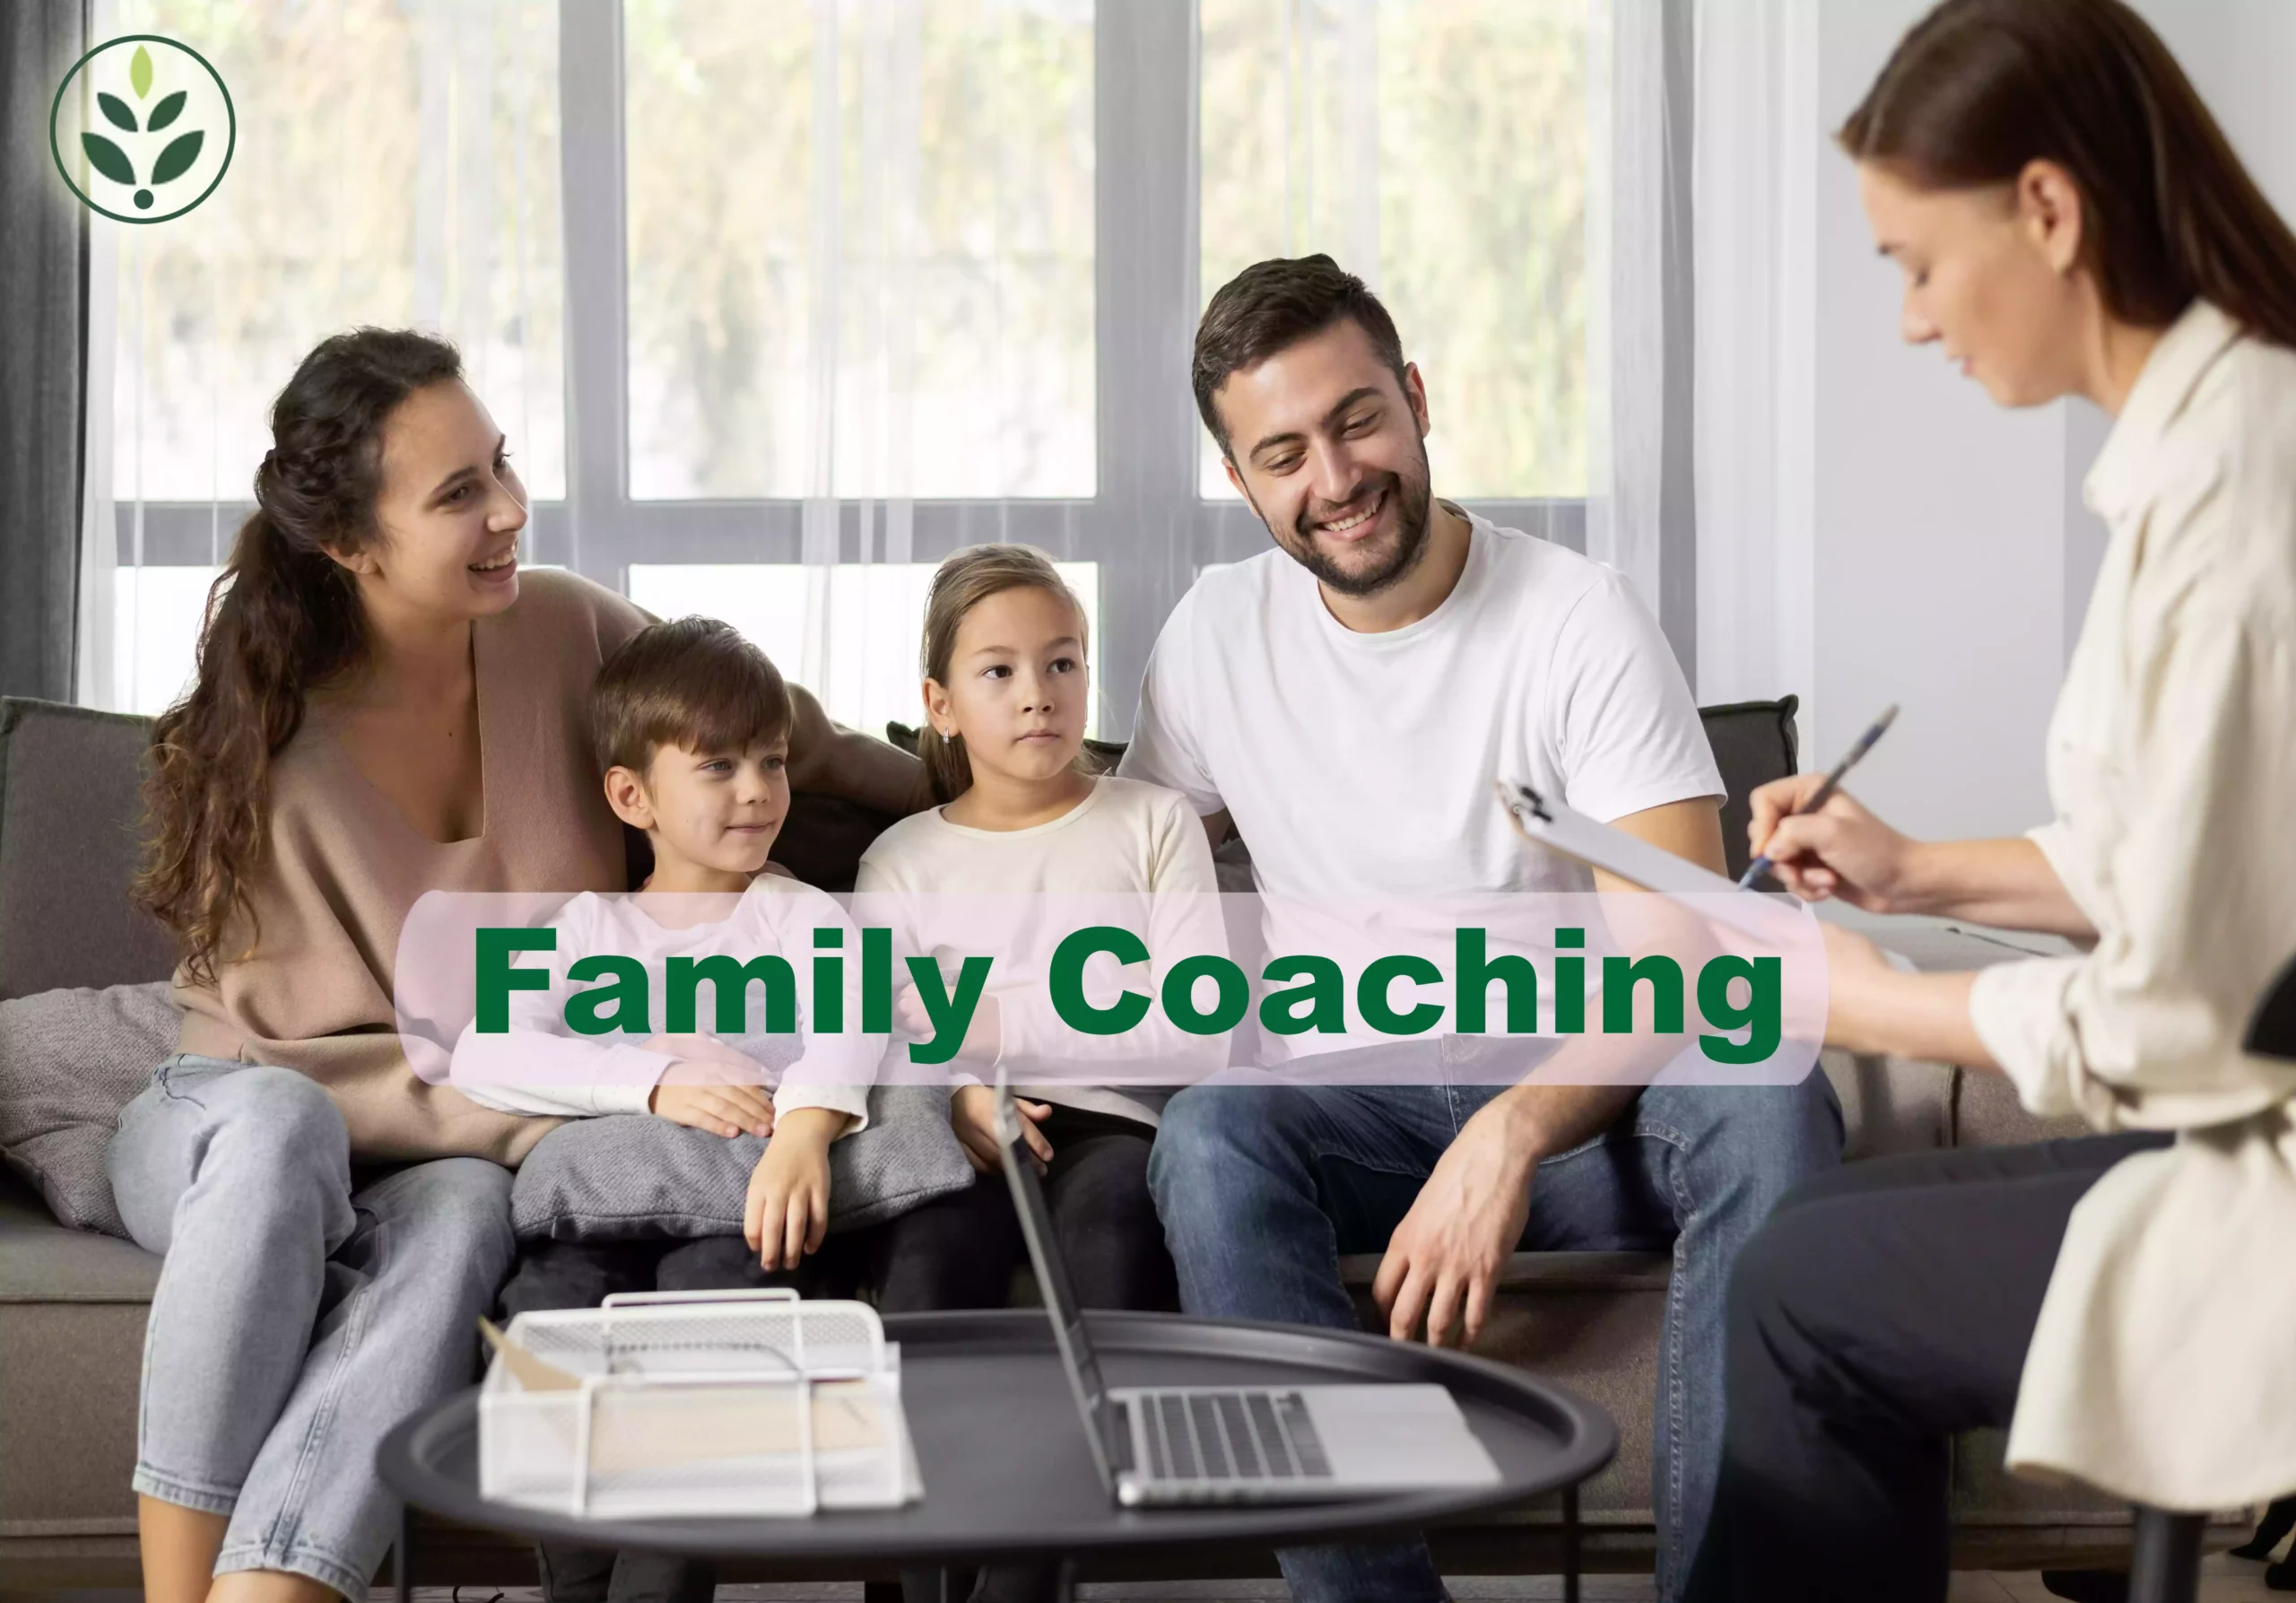 Family Coaching